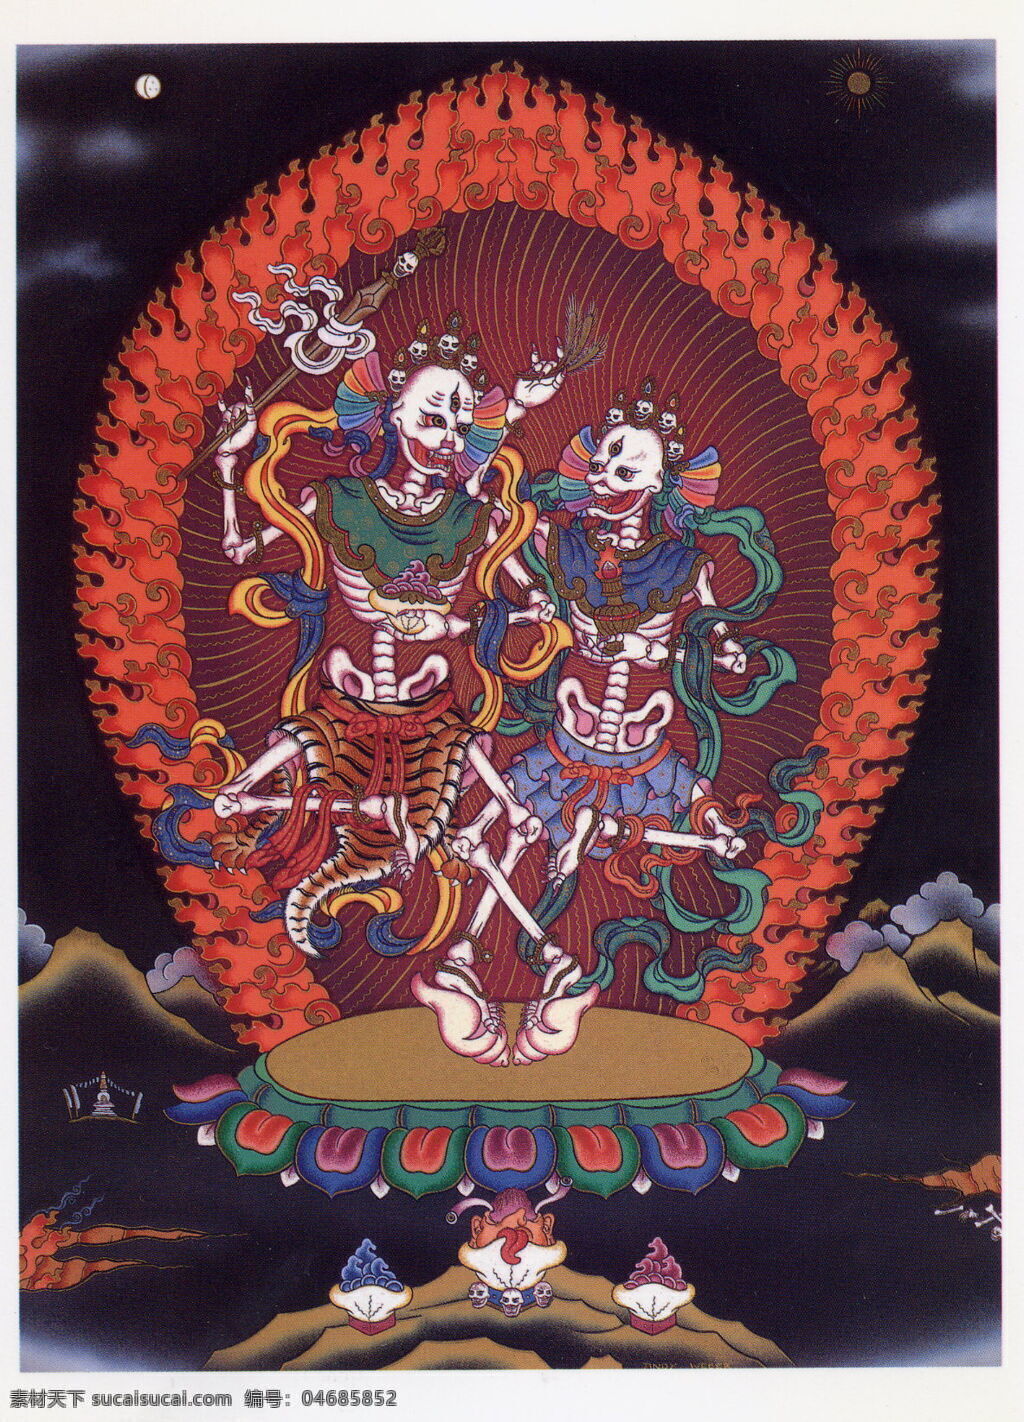 尸 陀 林 主 佛教 设计素材 唐卡 文化艺术 艺术 宗教 宗教信仰 尸陀林主 模板下载 藏传